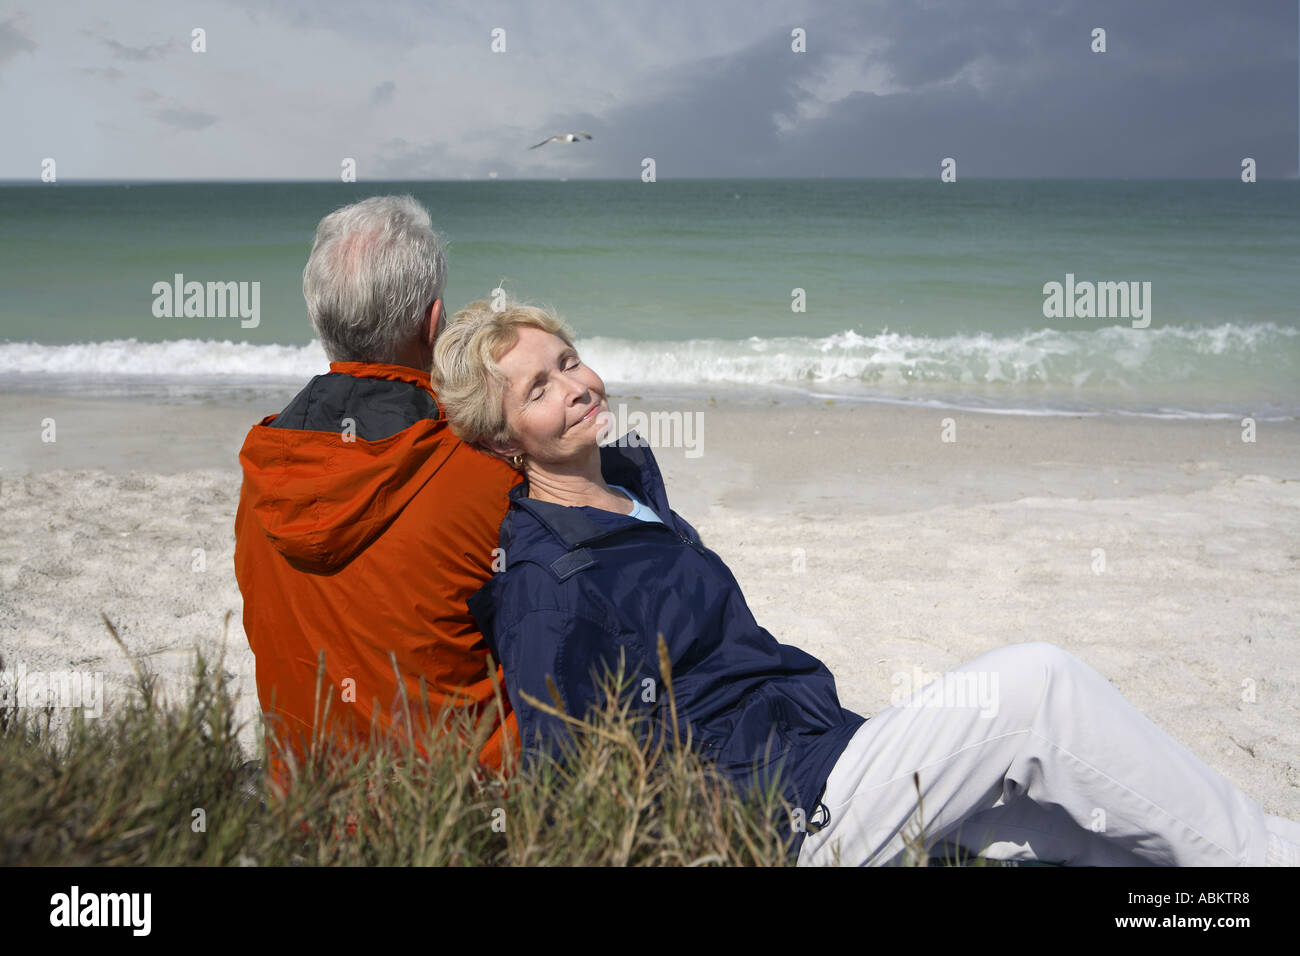 Homme d'âge moyen et la femme assise sur la plage portant l'orange et le bleu marine coupe-vent Banque D'Images